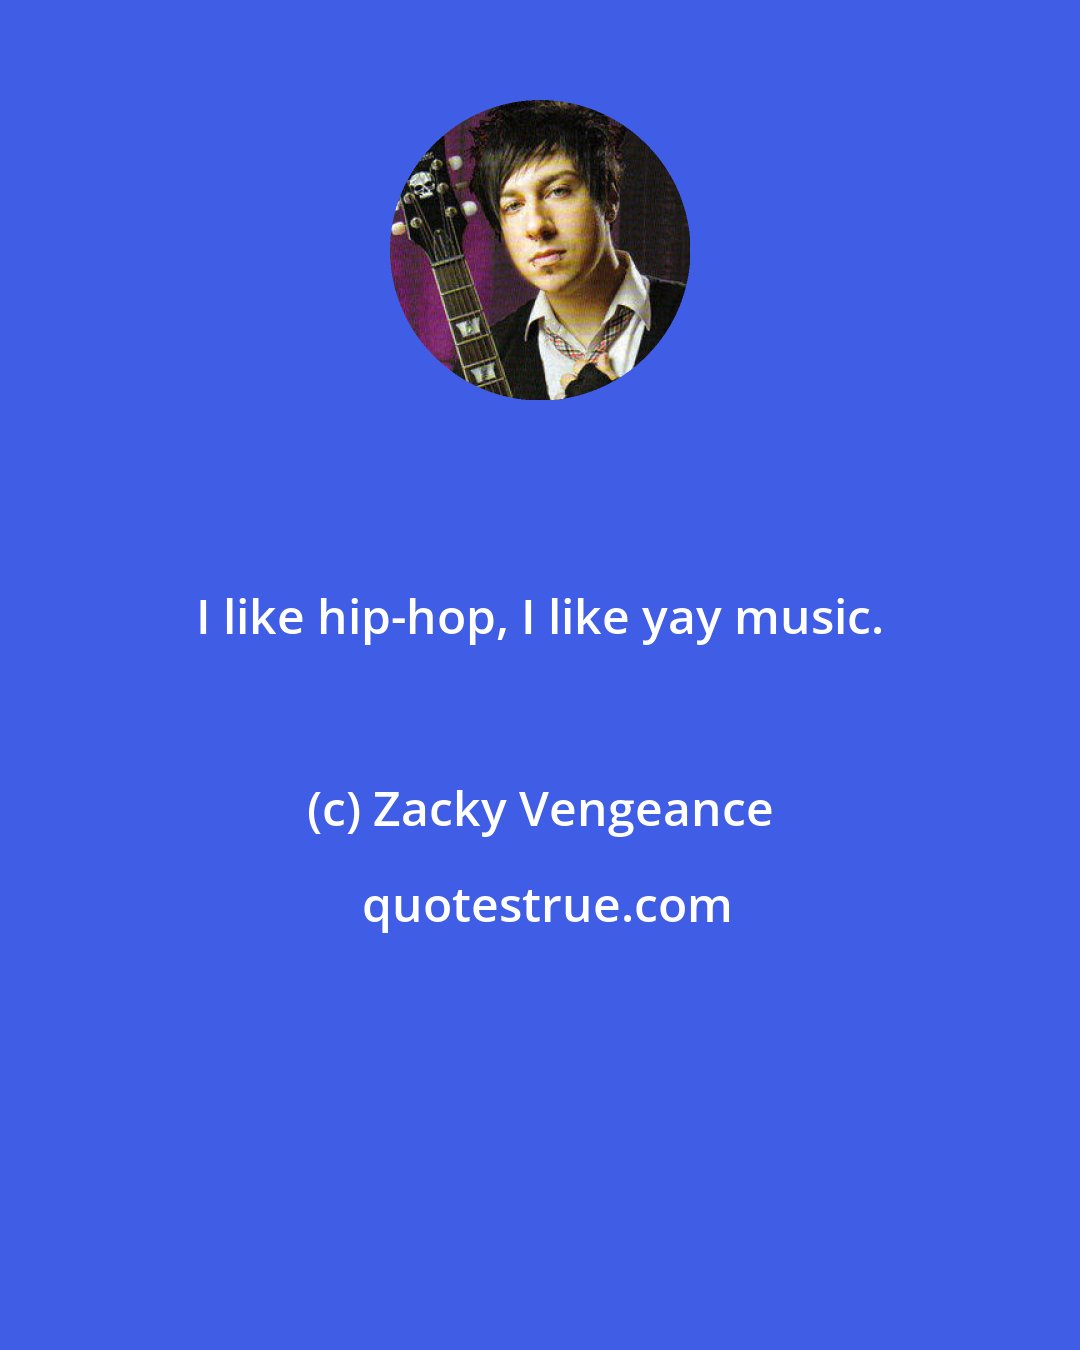 Zacky Vengeance: I like hip-hop, I like yay music.